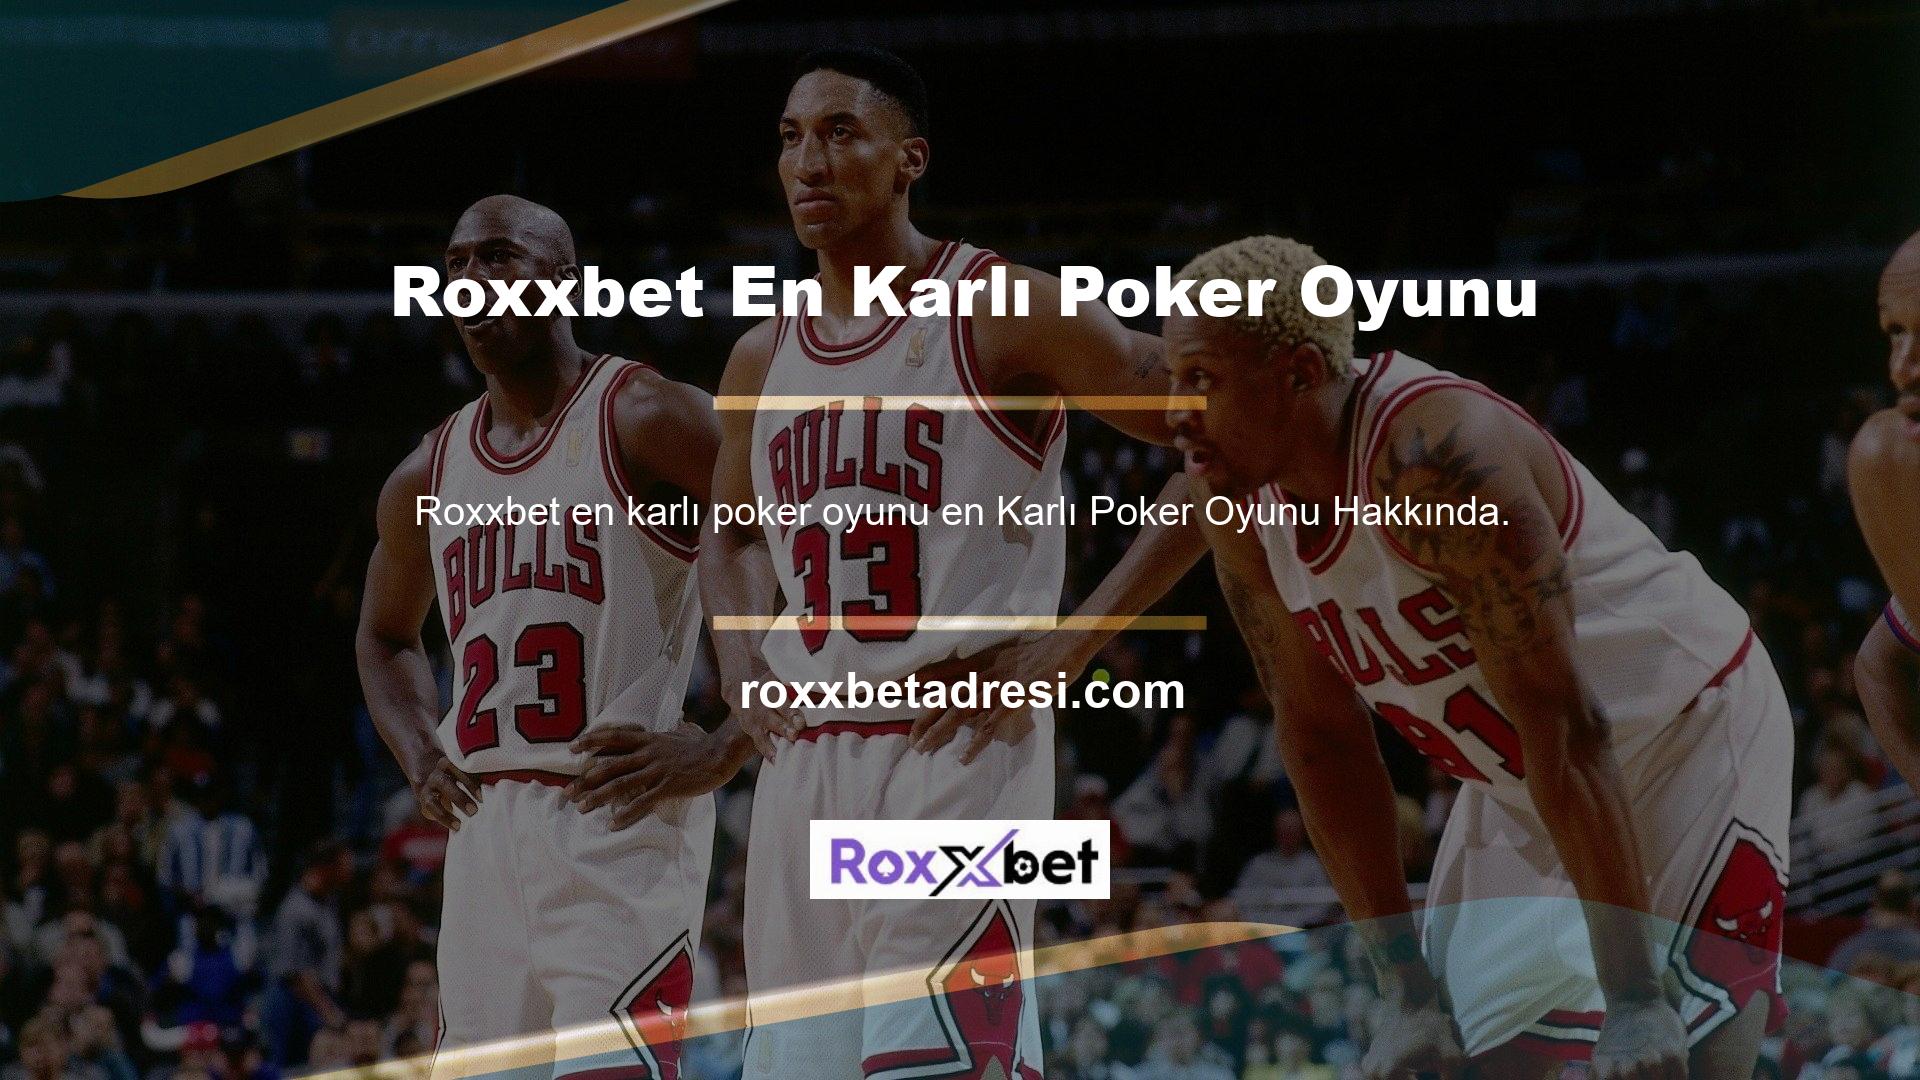 Roxxbet sitesine baktığınızda Türkçe poker seçeneklerini, açık poker seçeneklerini göreceksiniz